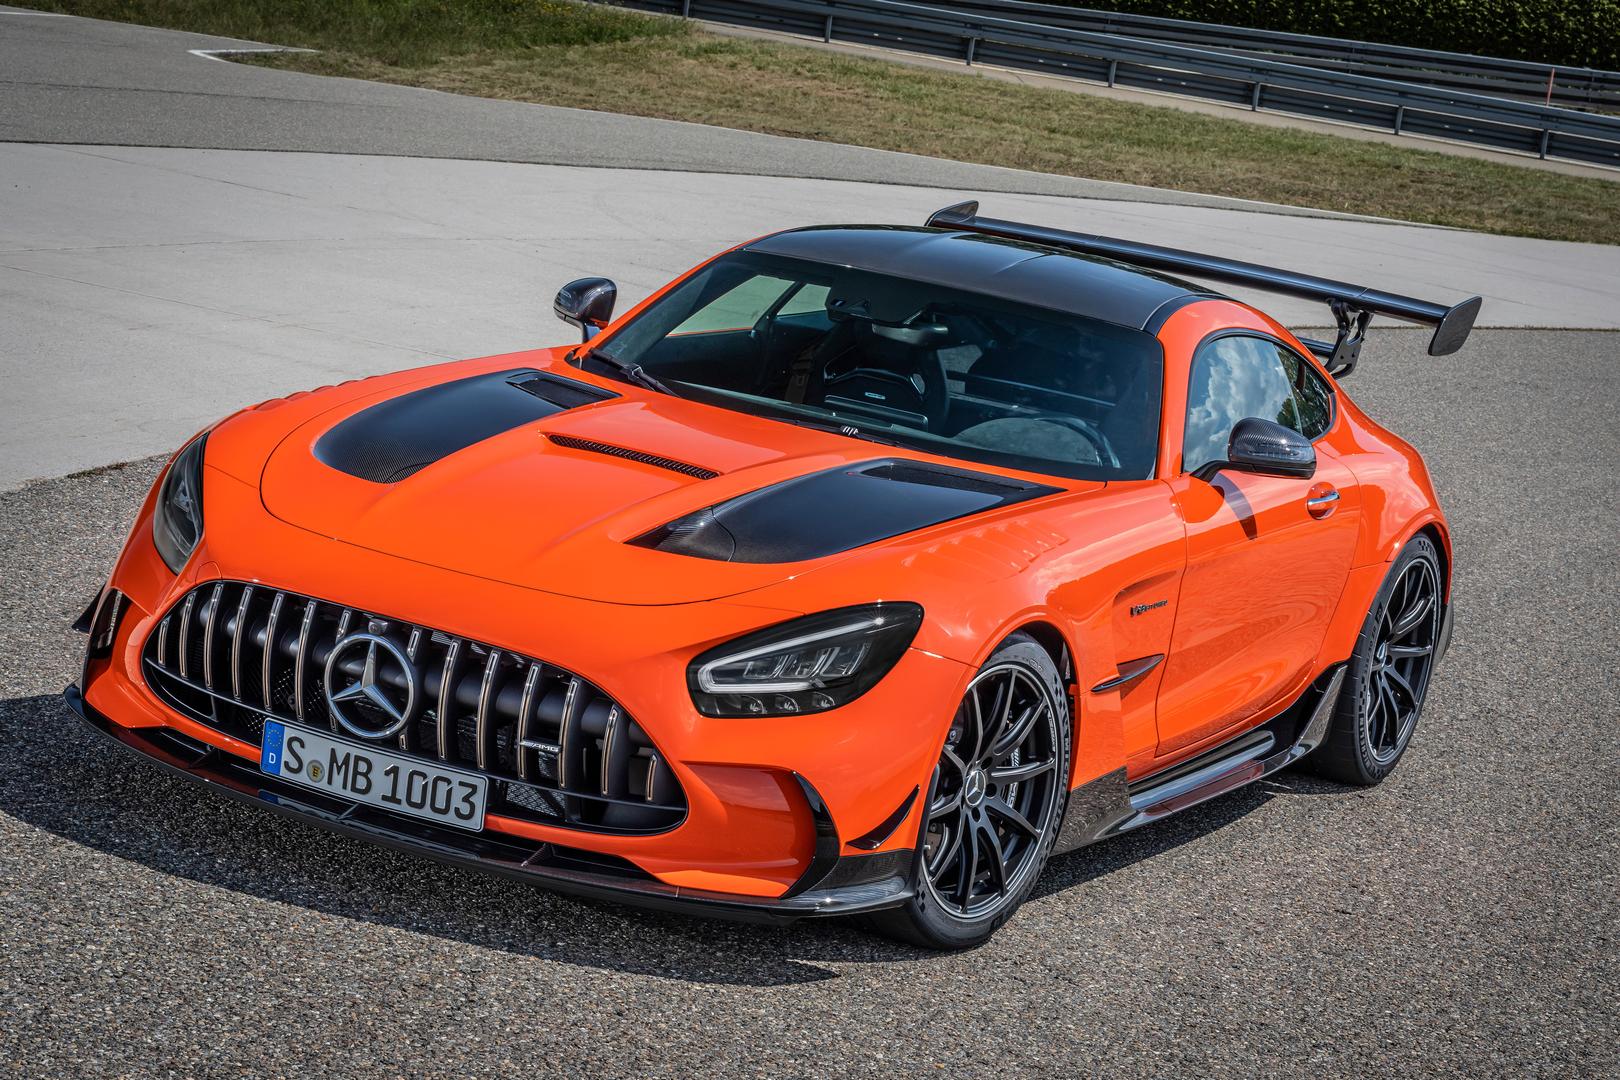 Ценник - резкий рост по сравнению с Mercedes-AMG GT R, который продается в Германии по цене 165 474 евро.